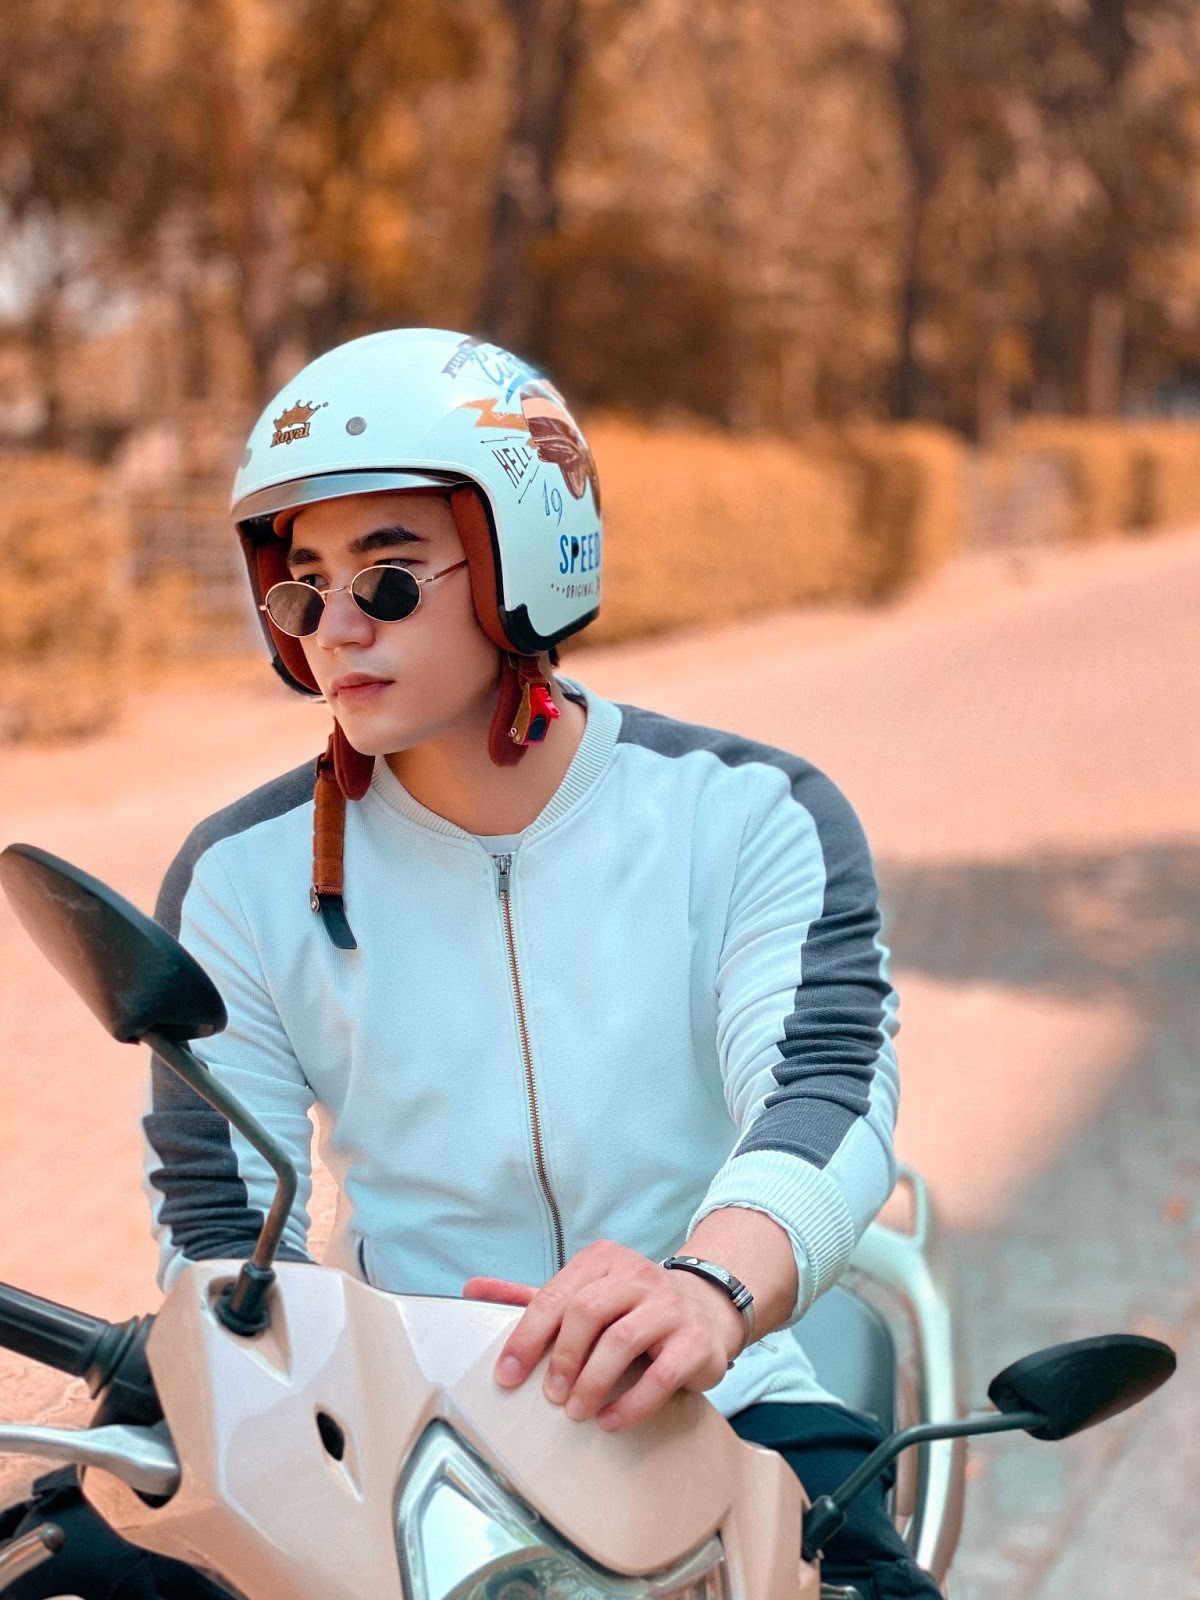 Mũ bảo hiểm Royal Helmet có gì nổi bật mà được các travel blogger nổi tiếng lựa chọn? - ảnh 4